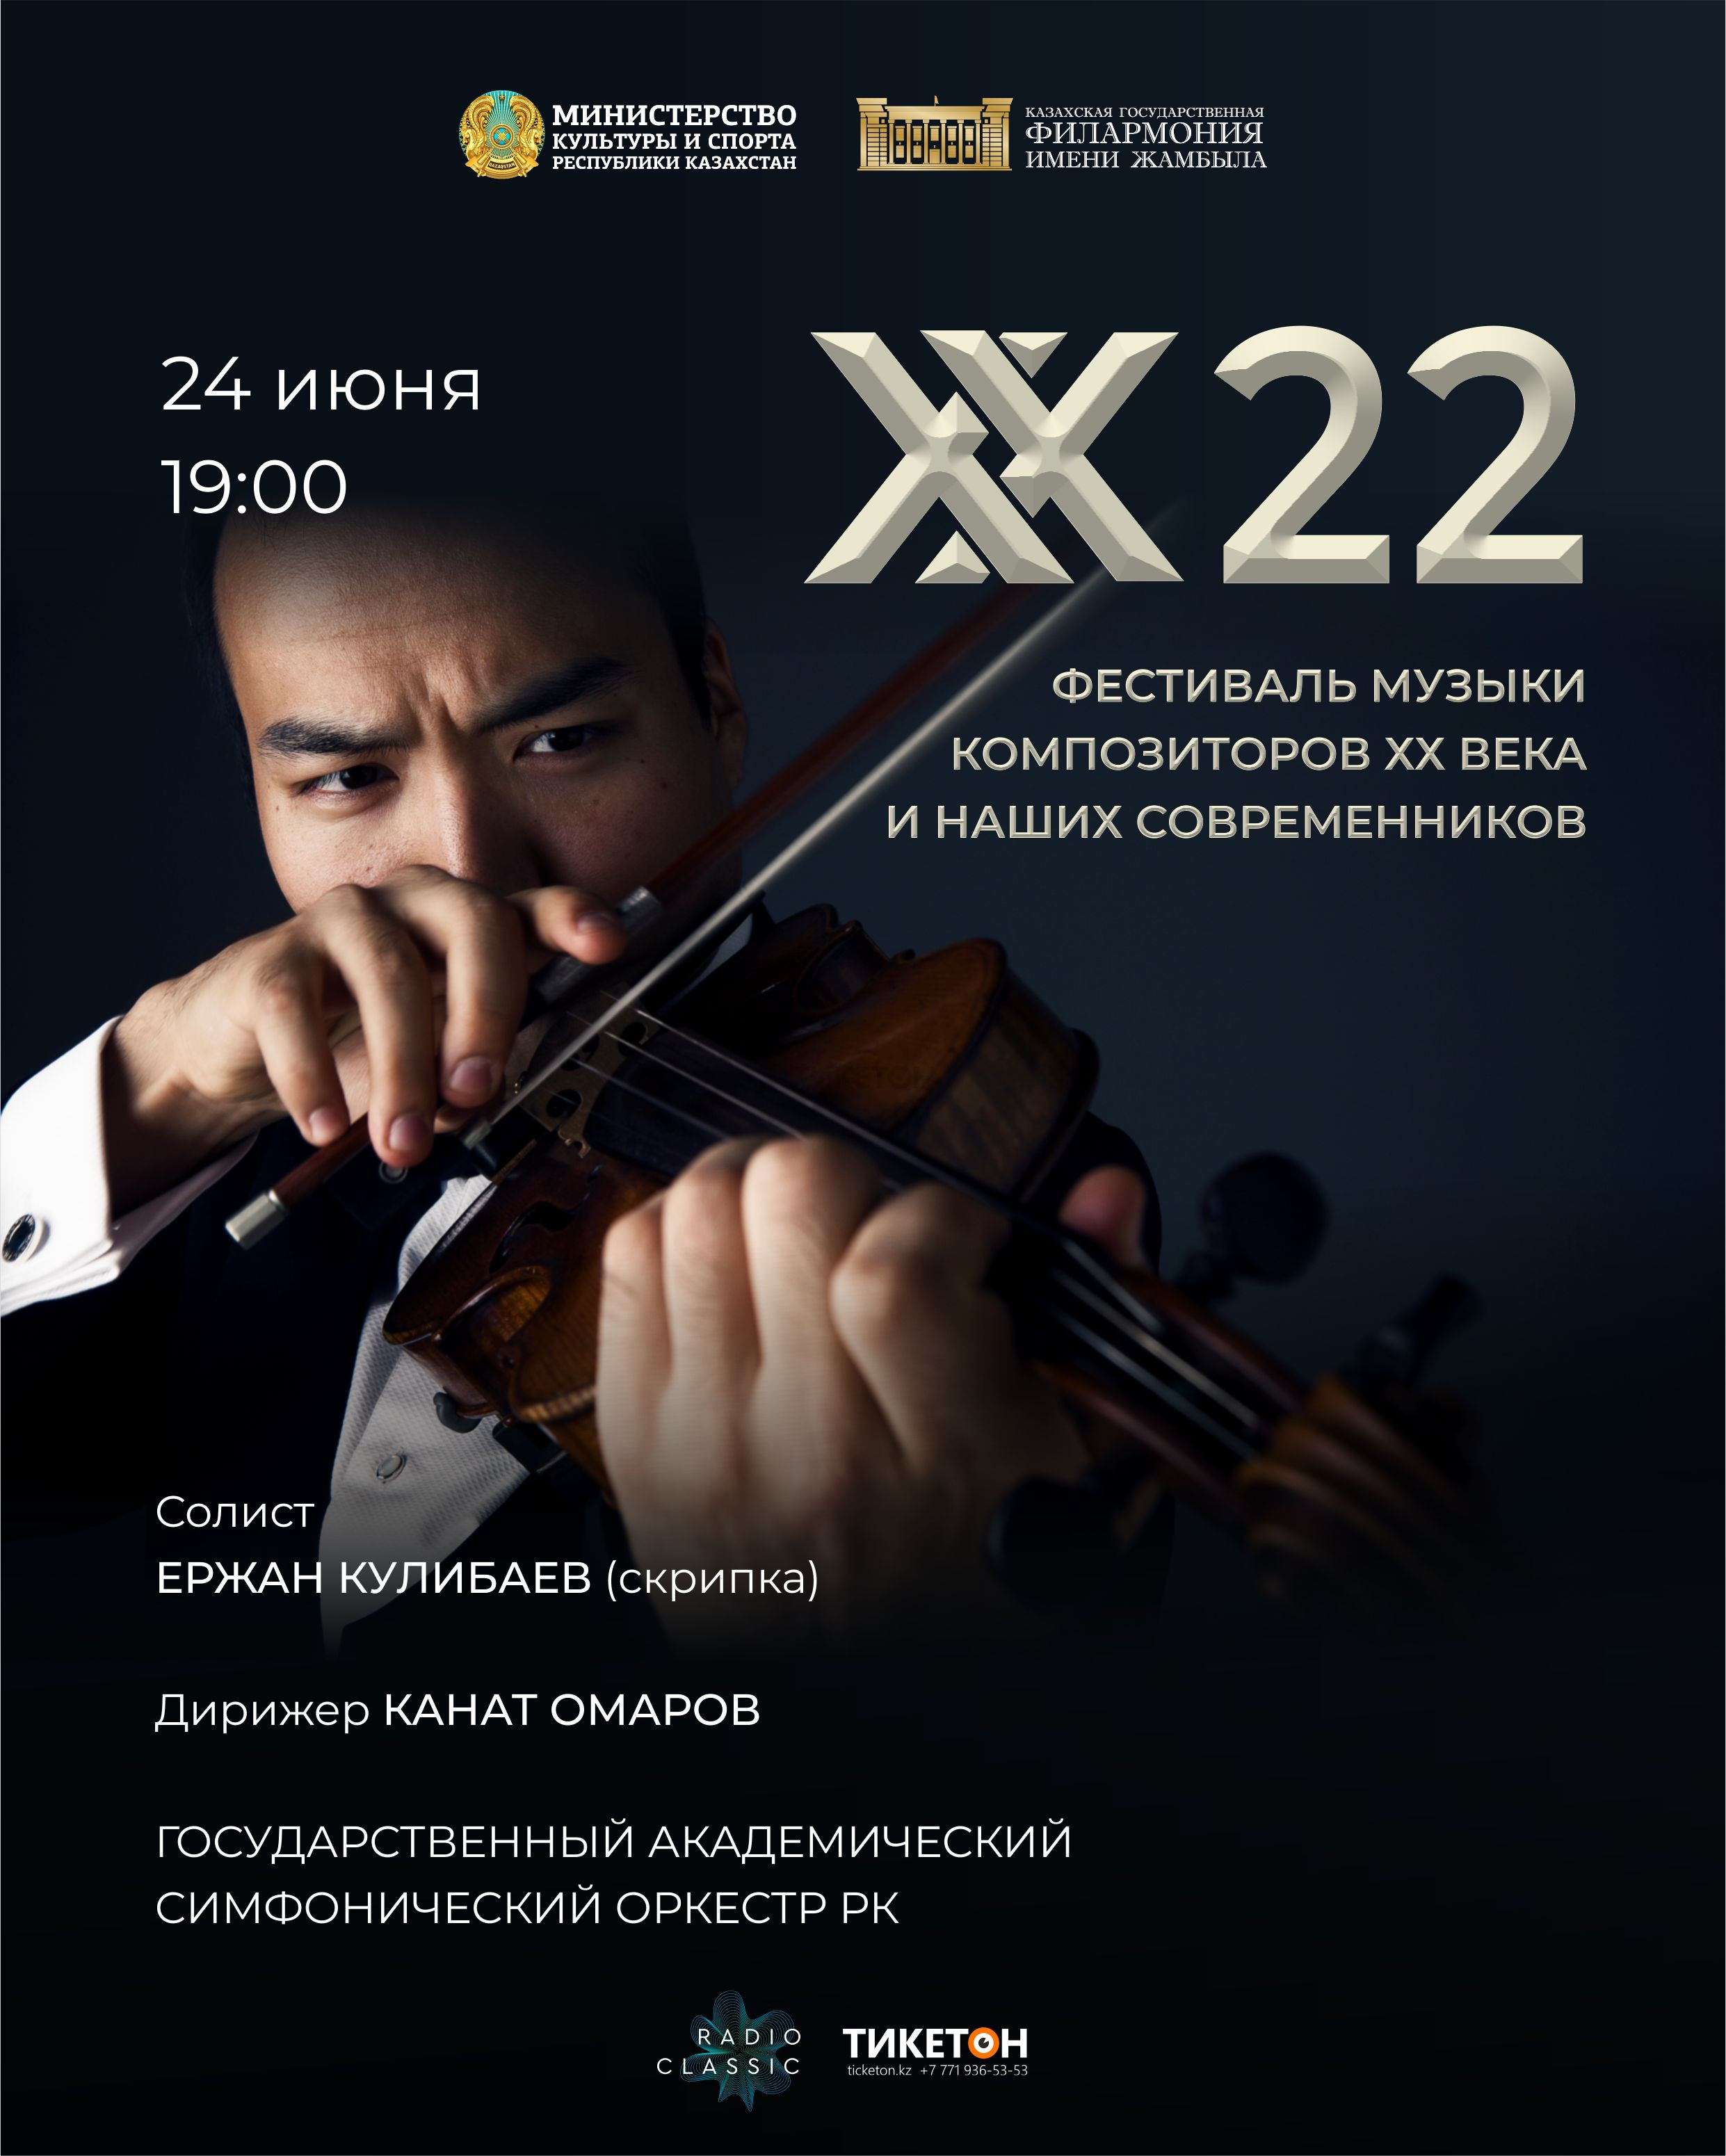 «ХХ22» фестиваль музыки композиторов ХХ века и наших современников 24 июня